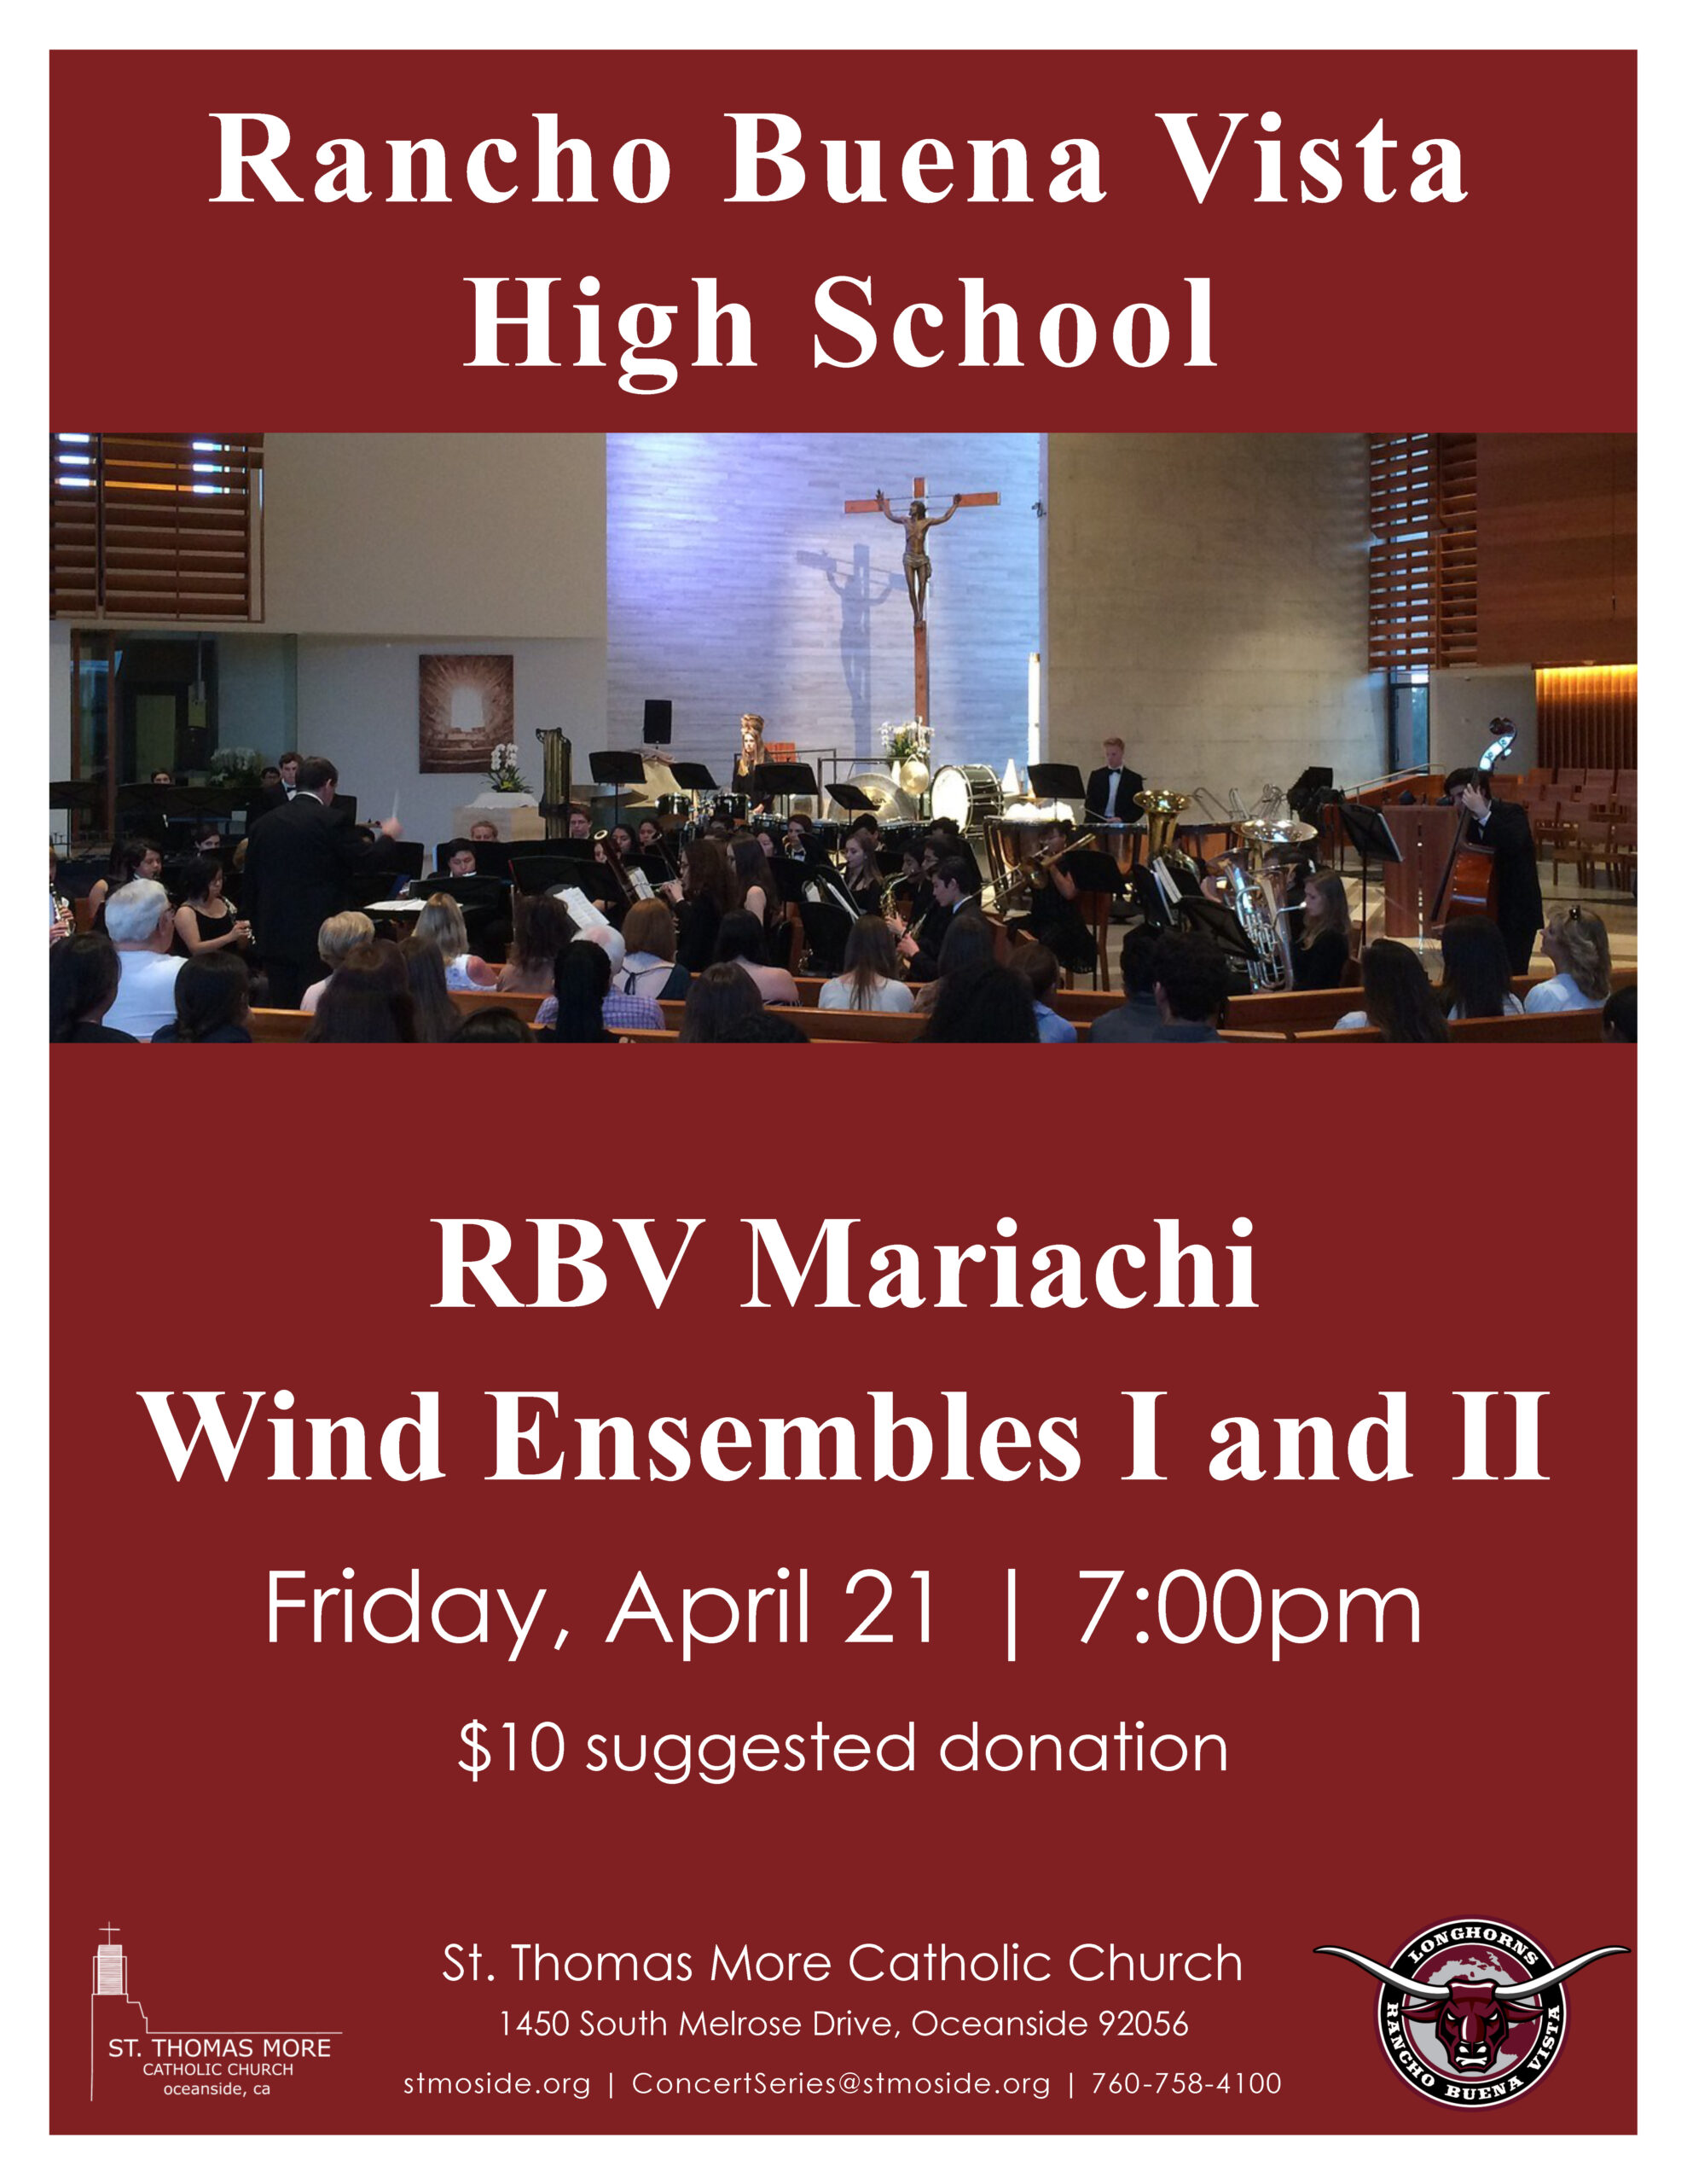 Wind Ensemble Concert April 21 at 7:00pm